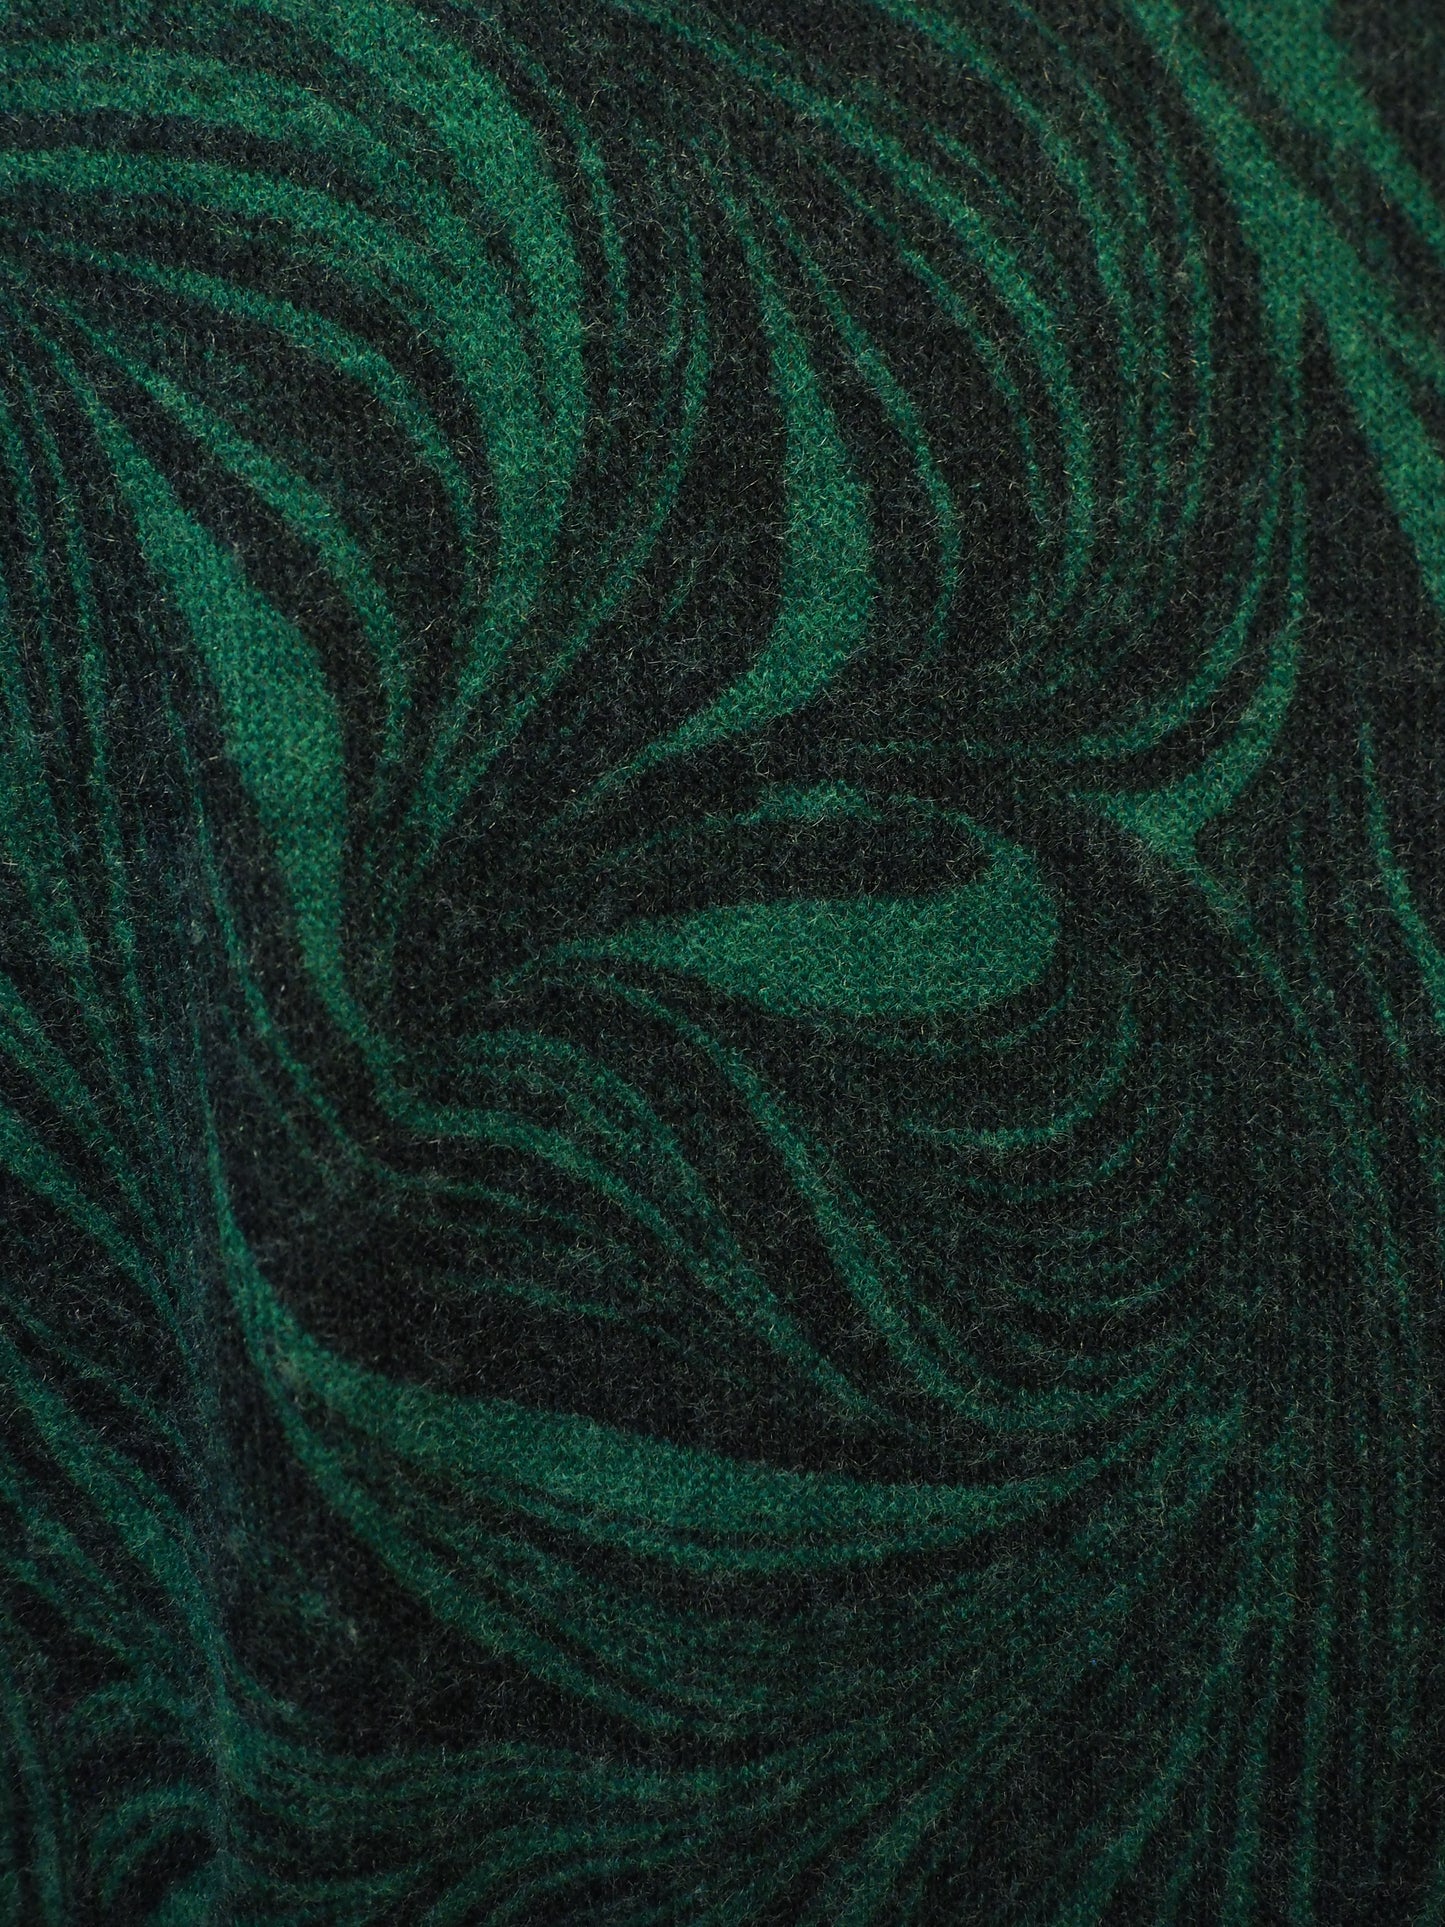 Vihreä kuviollinen Joutselan mekko käyttämätöntä vanhaa varastoa